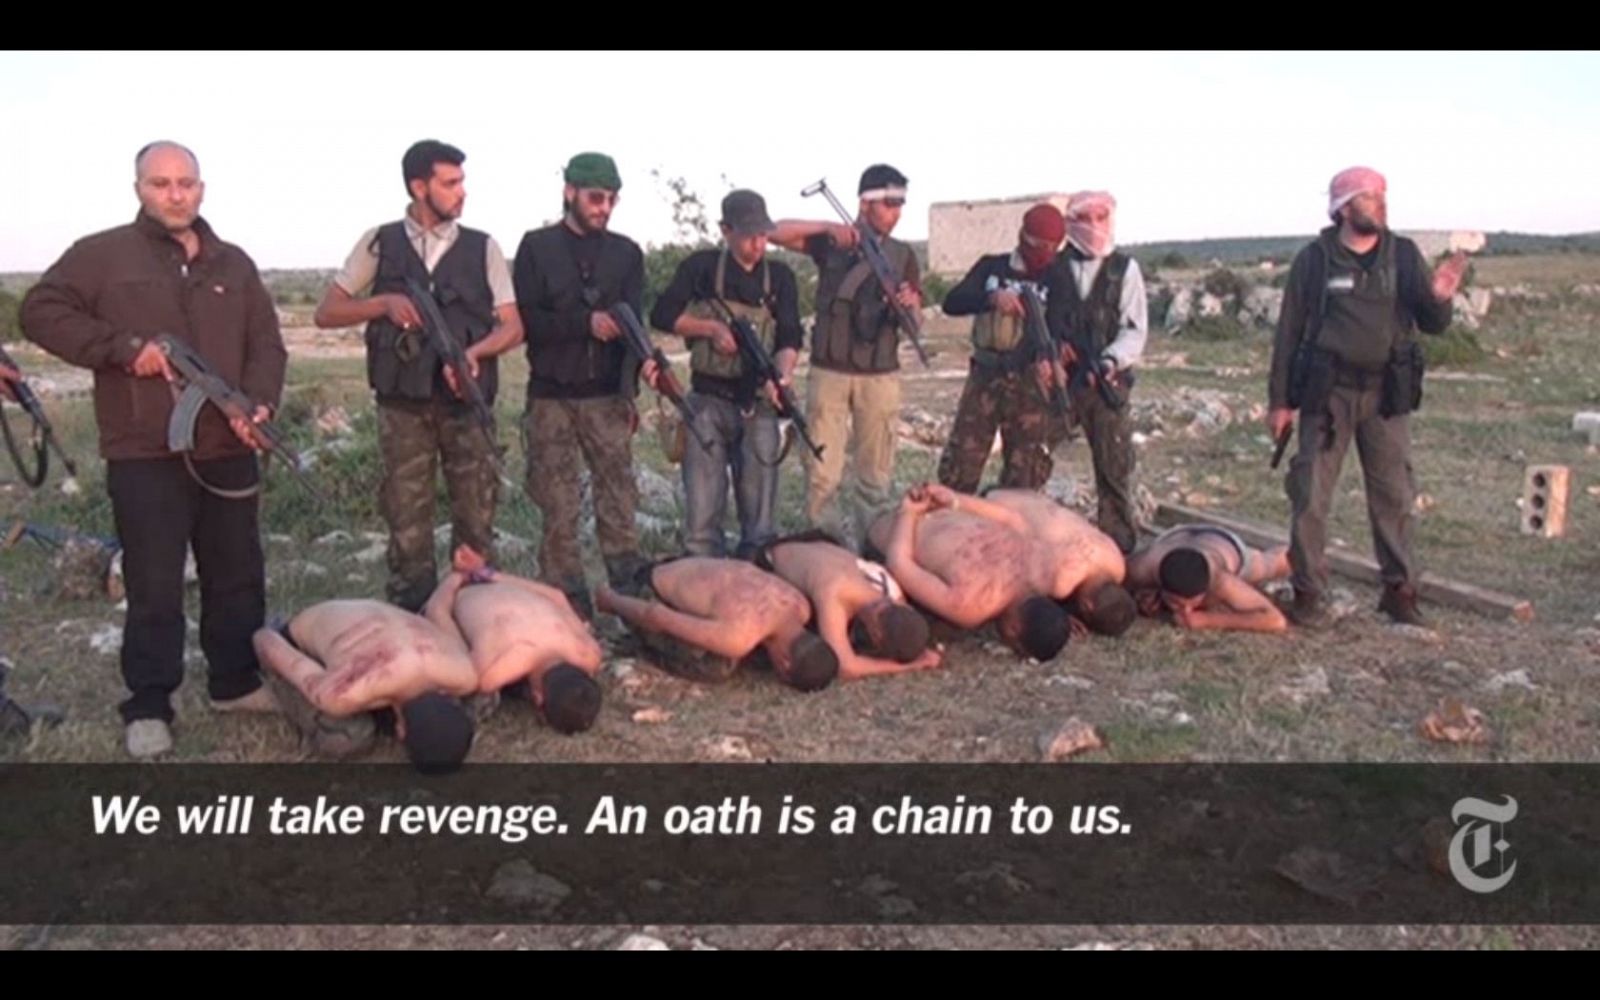 "Nos vengaremos. Un juramento es una cadena para nosotros", se puede leer en el vídeo publicado por el diario The New York Times que muestra la supuesta ejecución de soldados de Asad a manos de supuestos rebeldes sirios